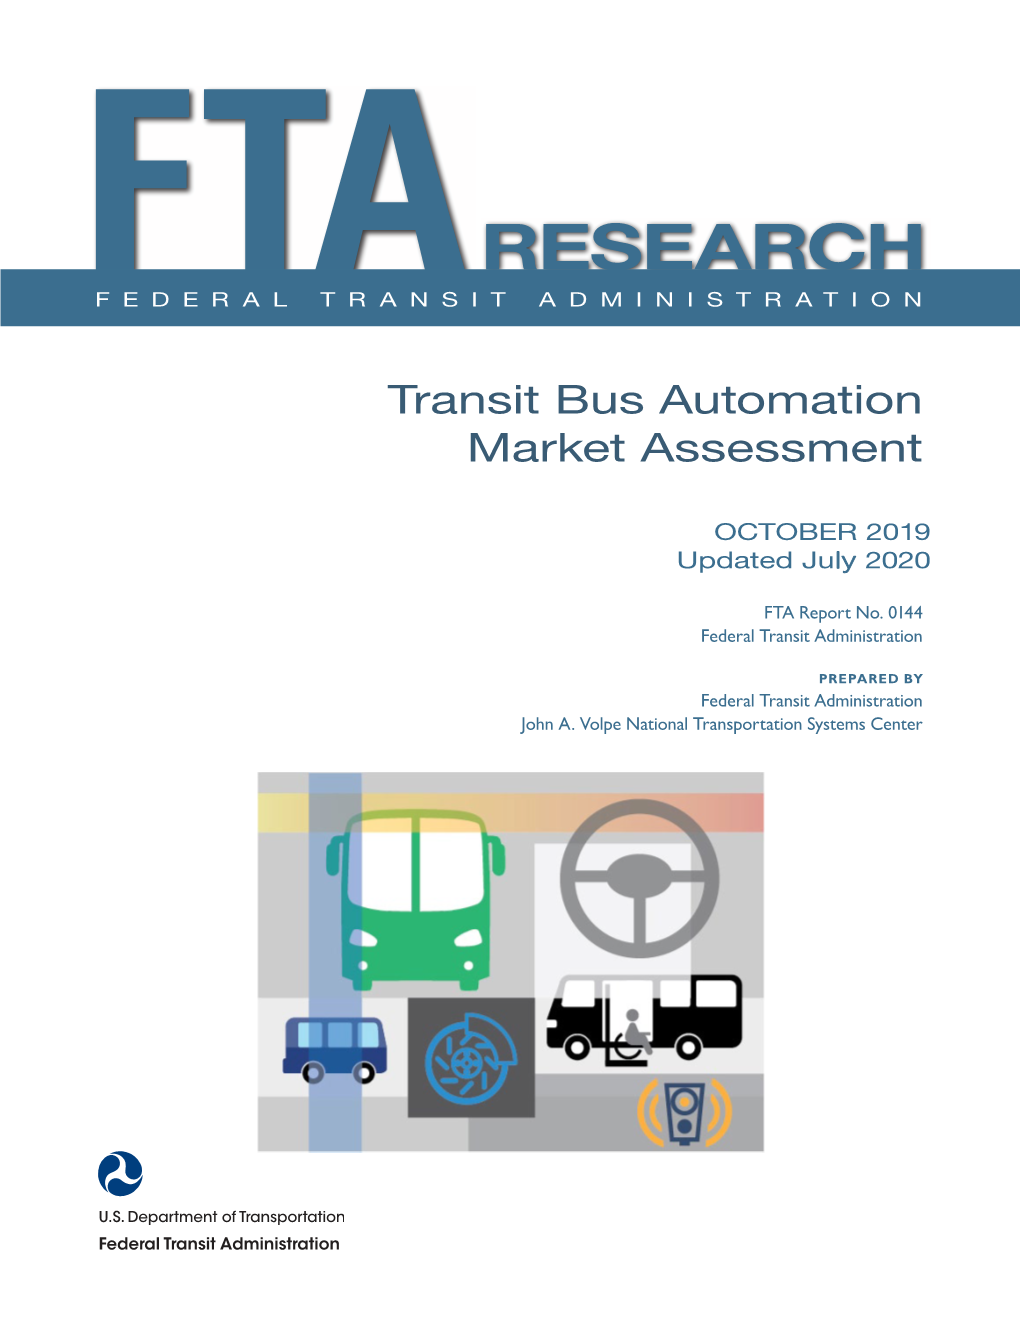 Transit Bus Automation Market Assessment